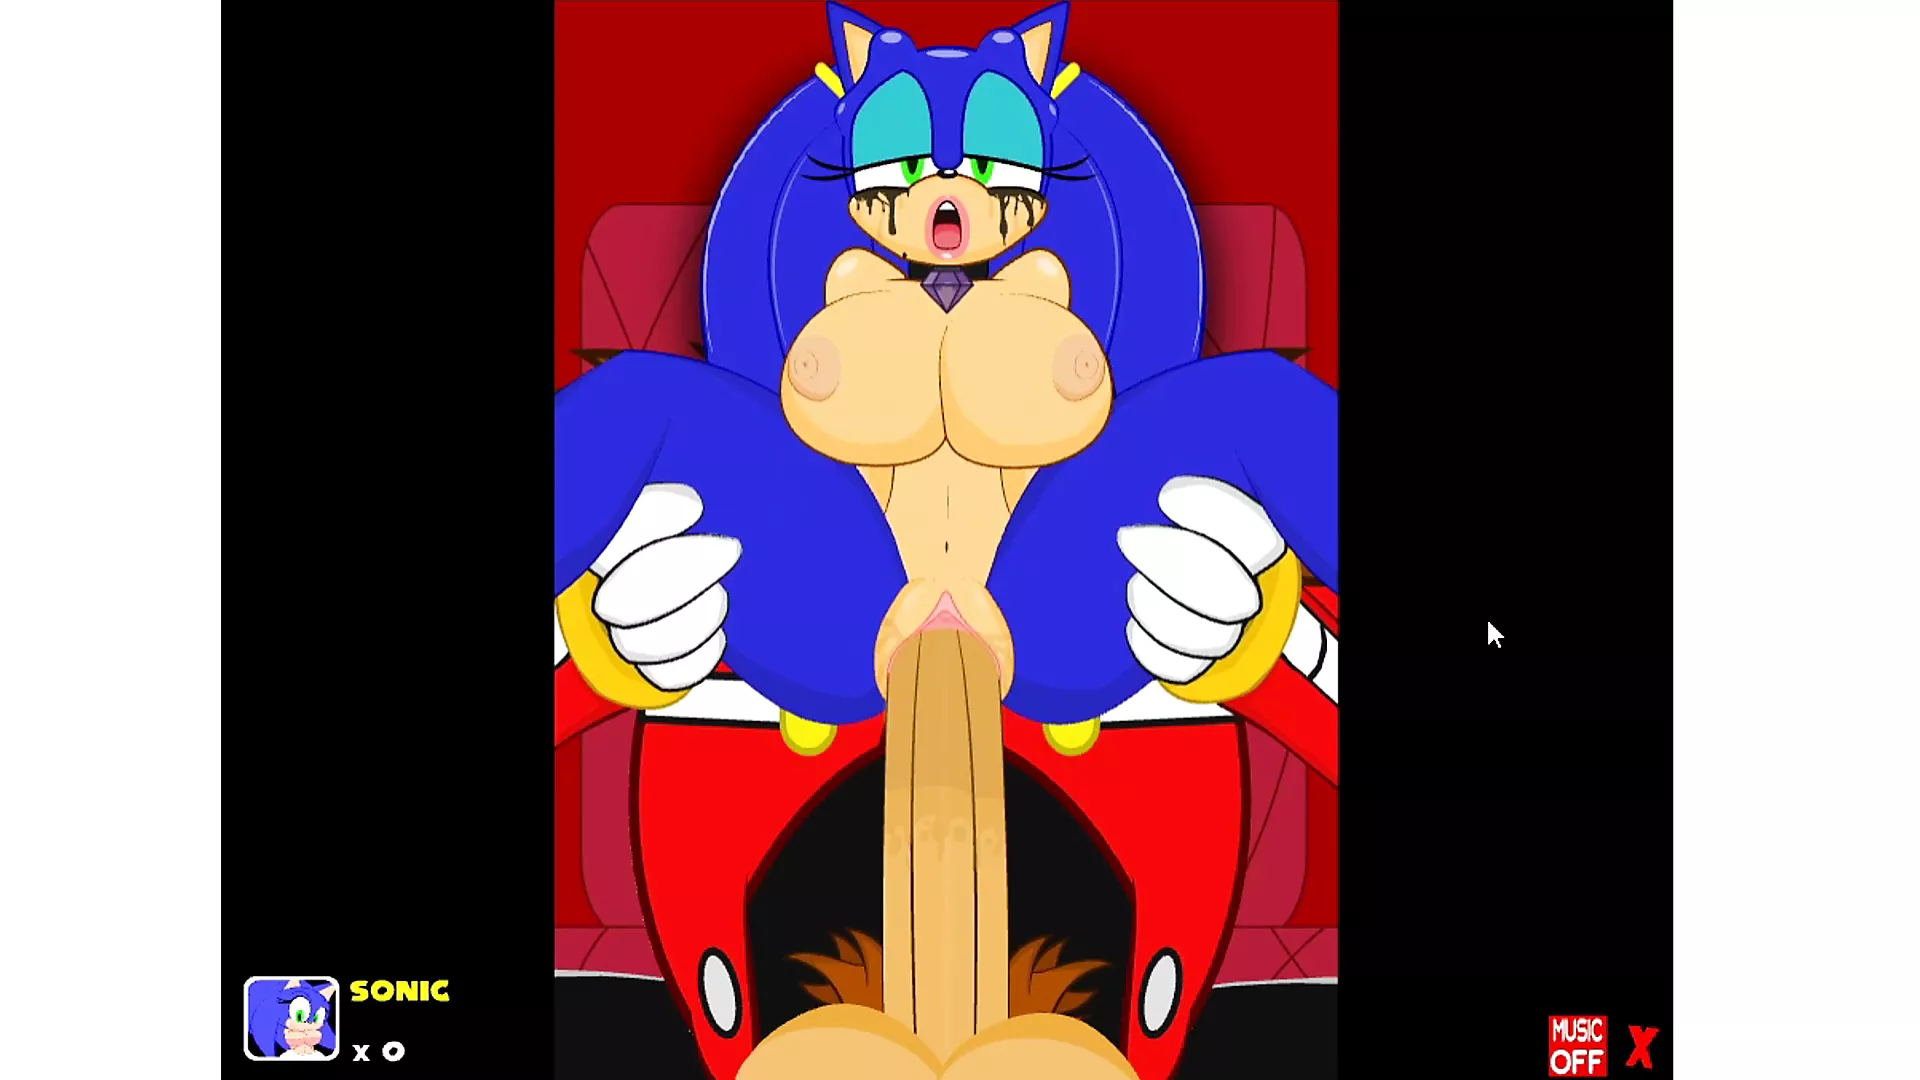 donna prieto recommends Sonic Transformed 2 Porn